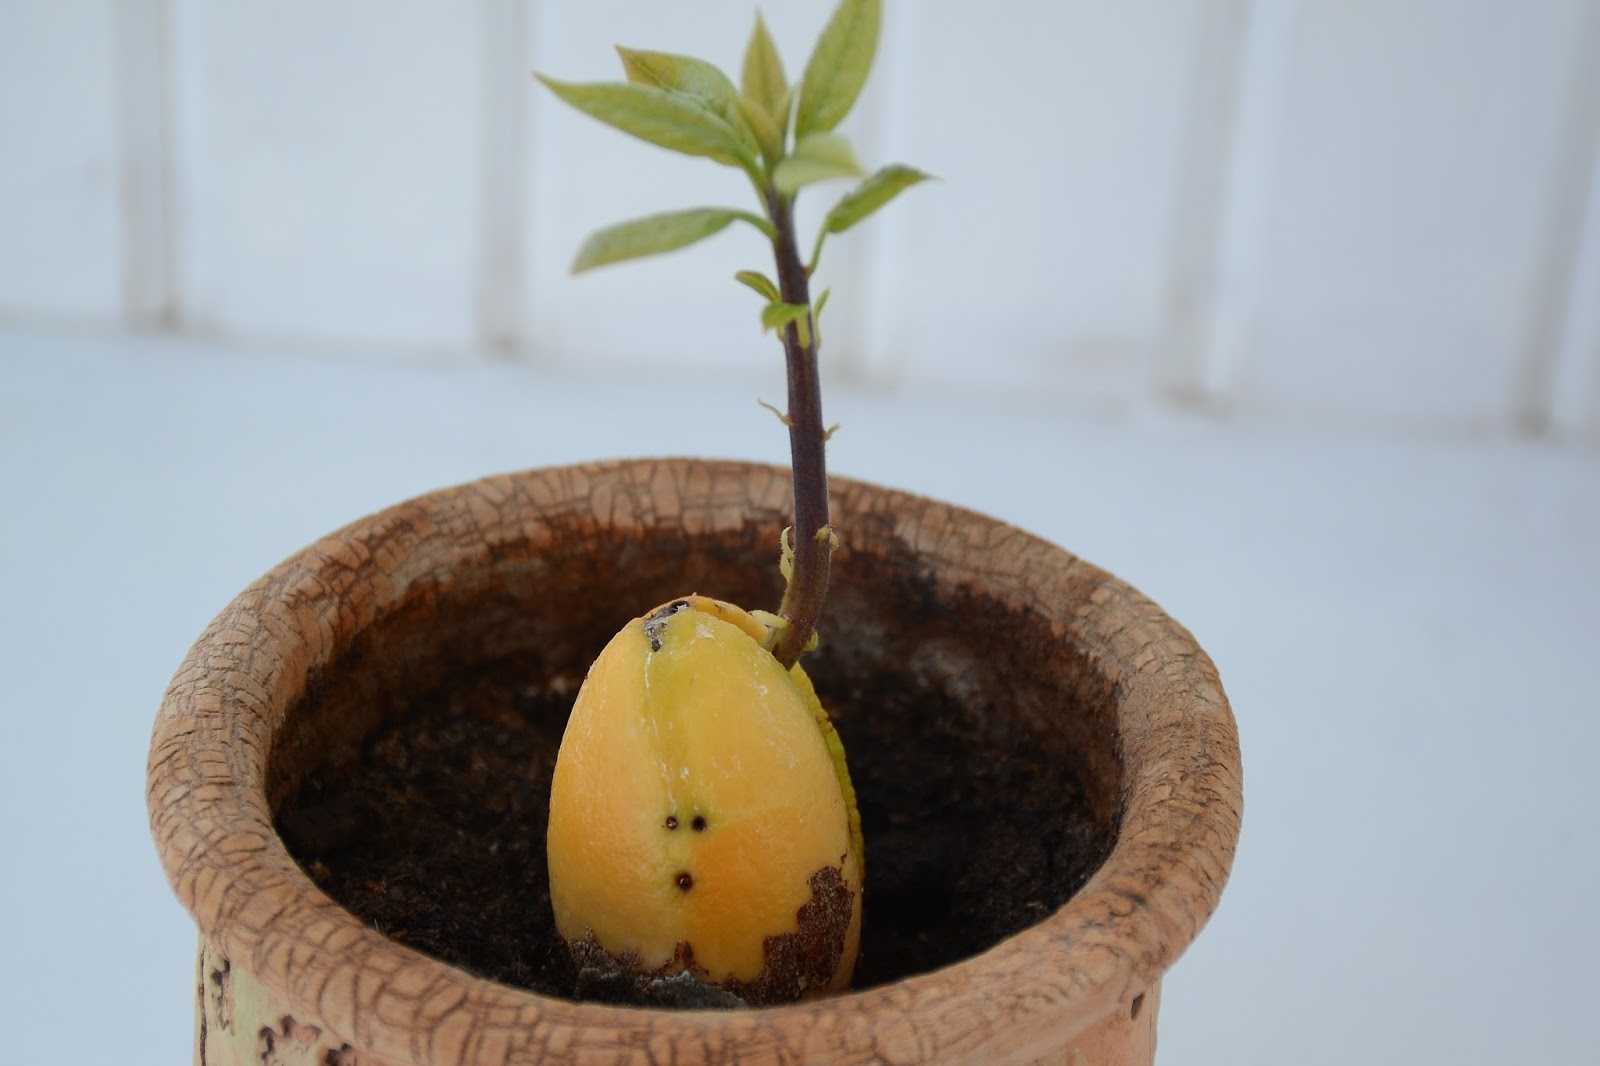 Фото авокадо выращенных в домашних условиях. Прорастить манго. Манго пророщенный из косточки. Авокадо из косточки. Пророщенное семечко авокадо.